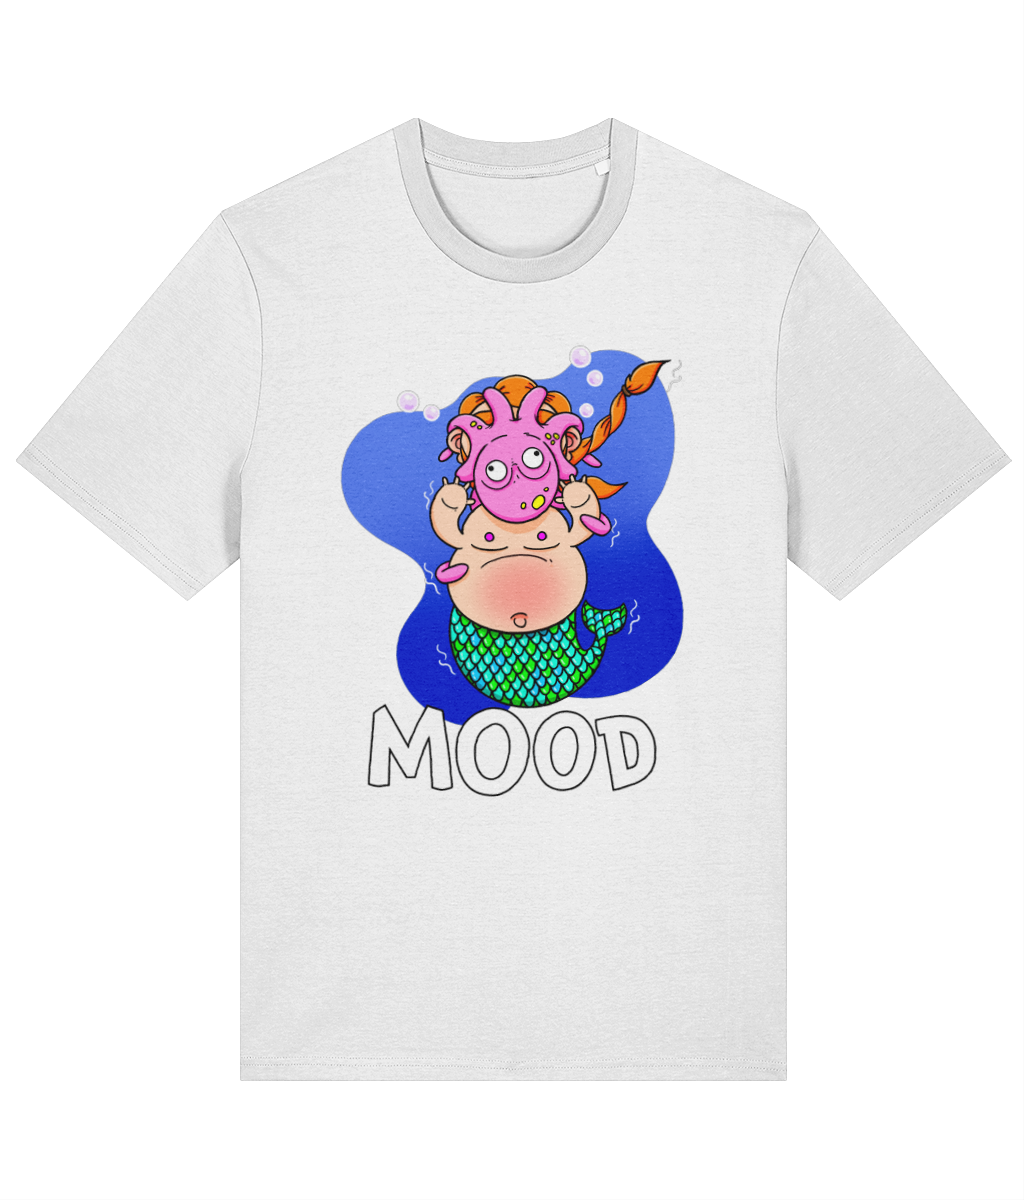 Mood T-Shirt